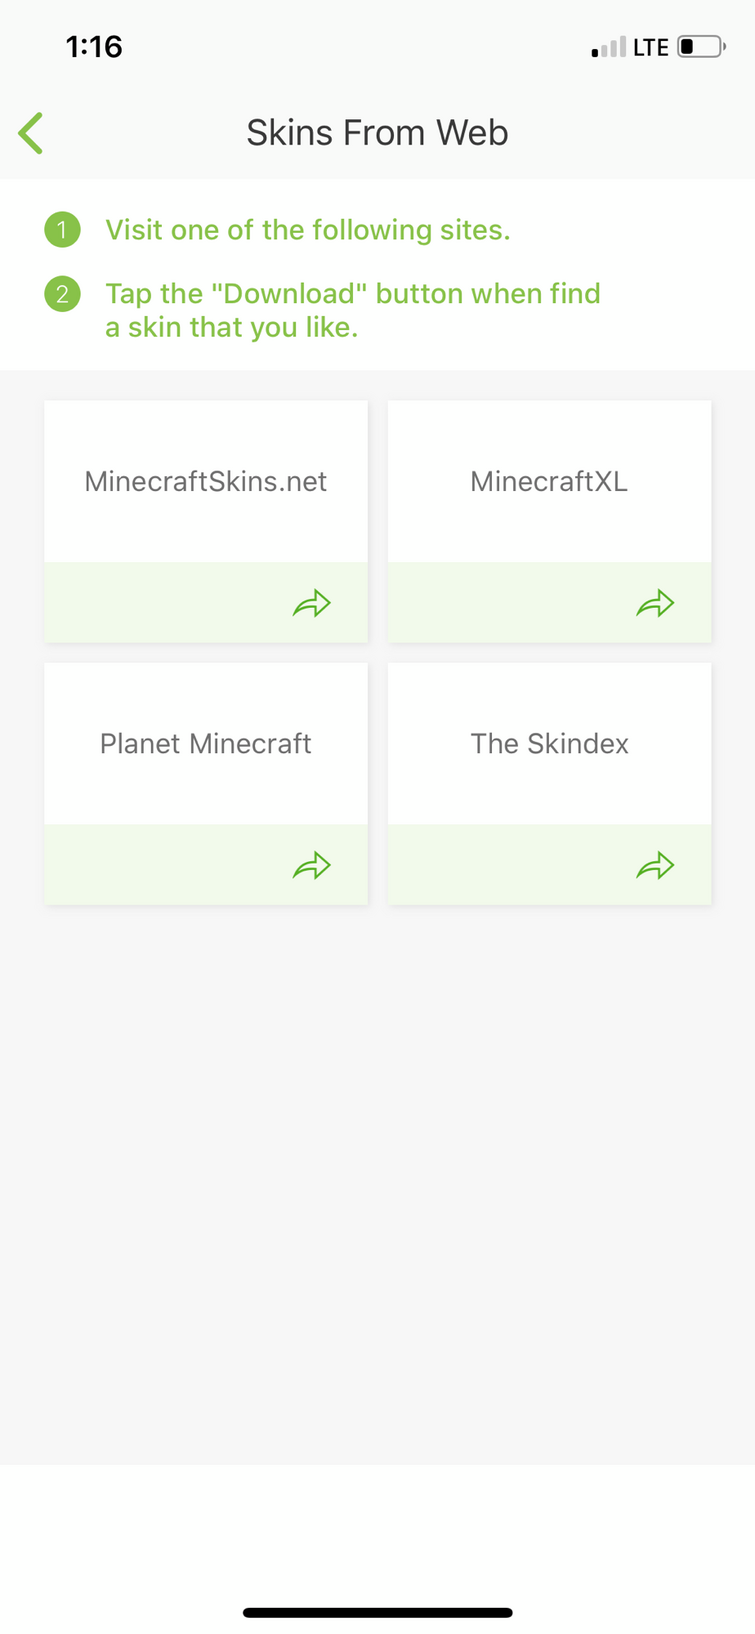 xXzOmBiE24Xx, Minecraft